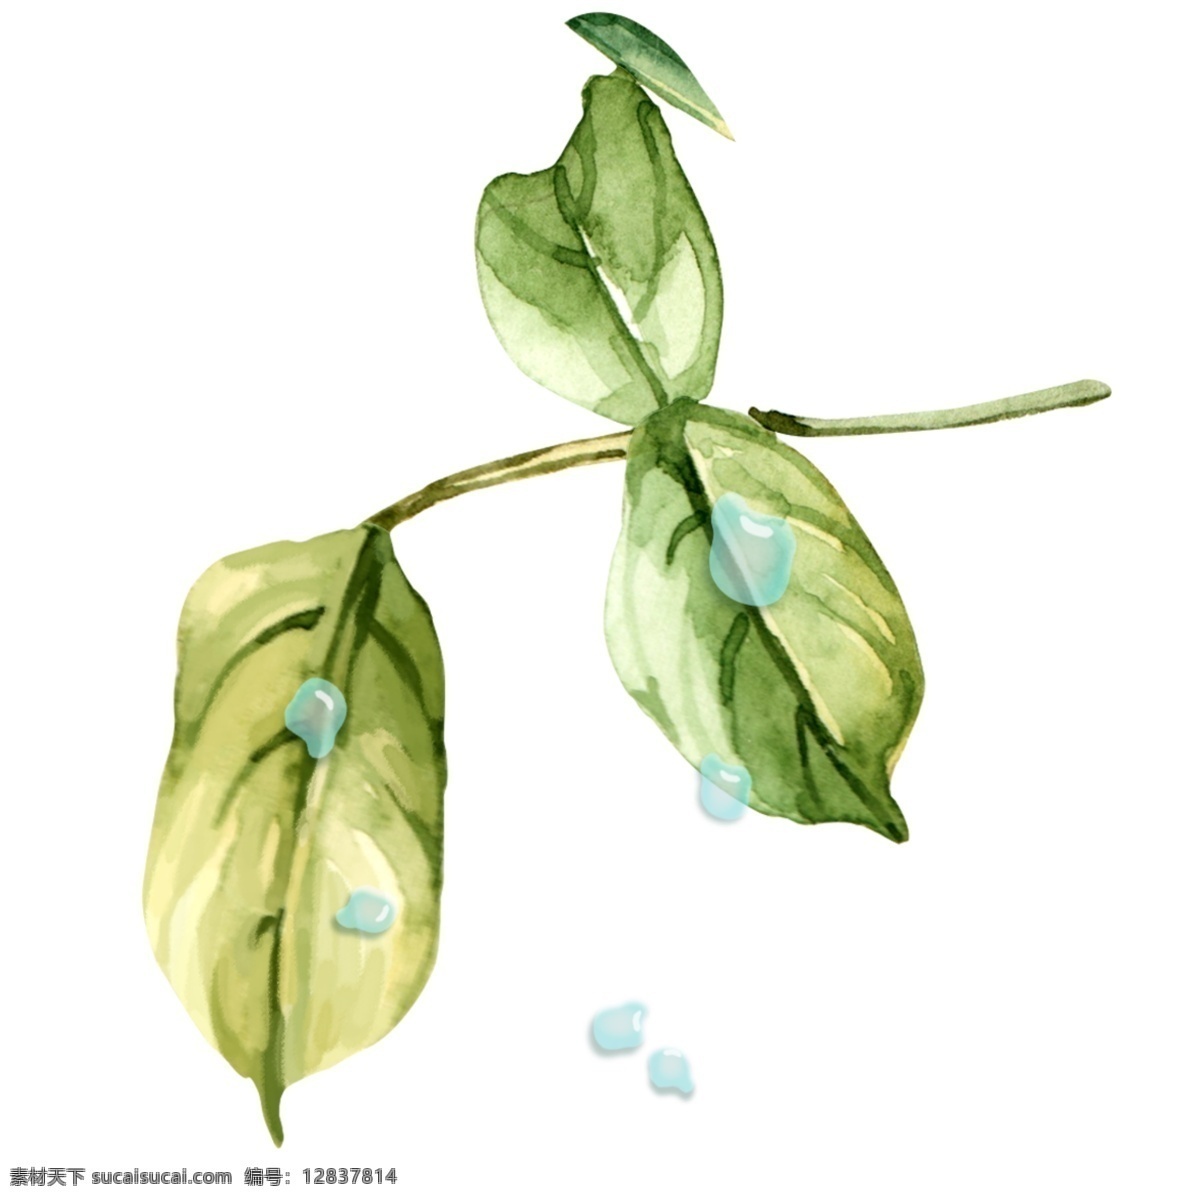 大气 植物 手绘 清新 叶子 小水 滴 元素 小清新 植物元素 水彩手绘 绿色叶子 水滴元素